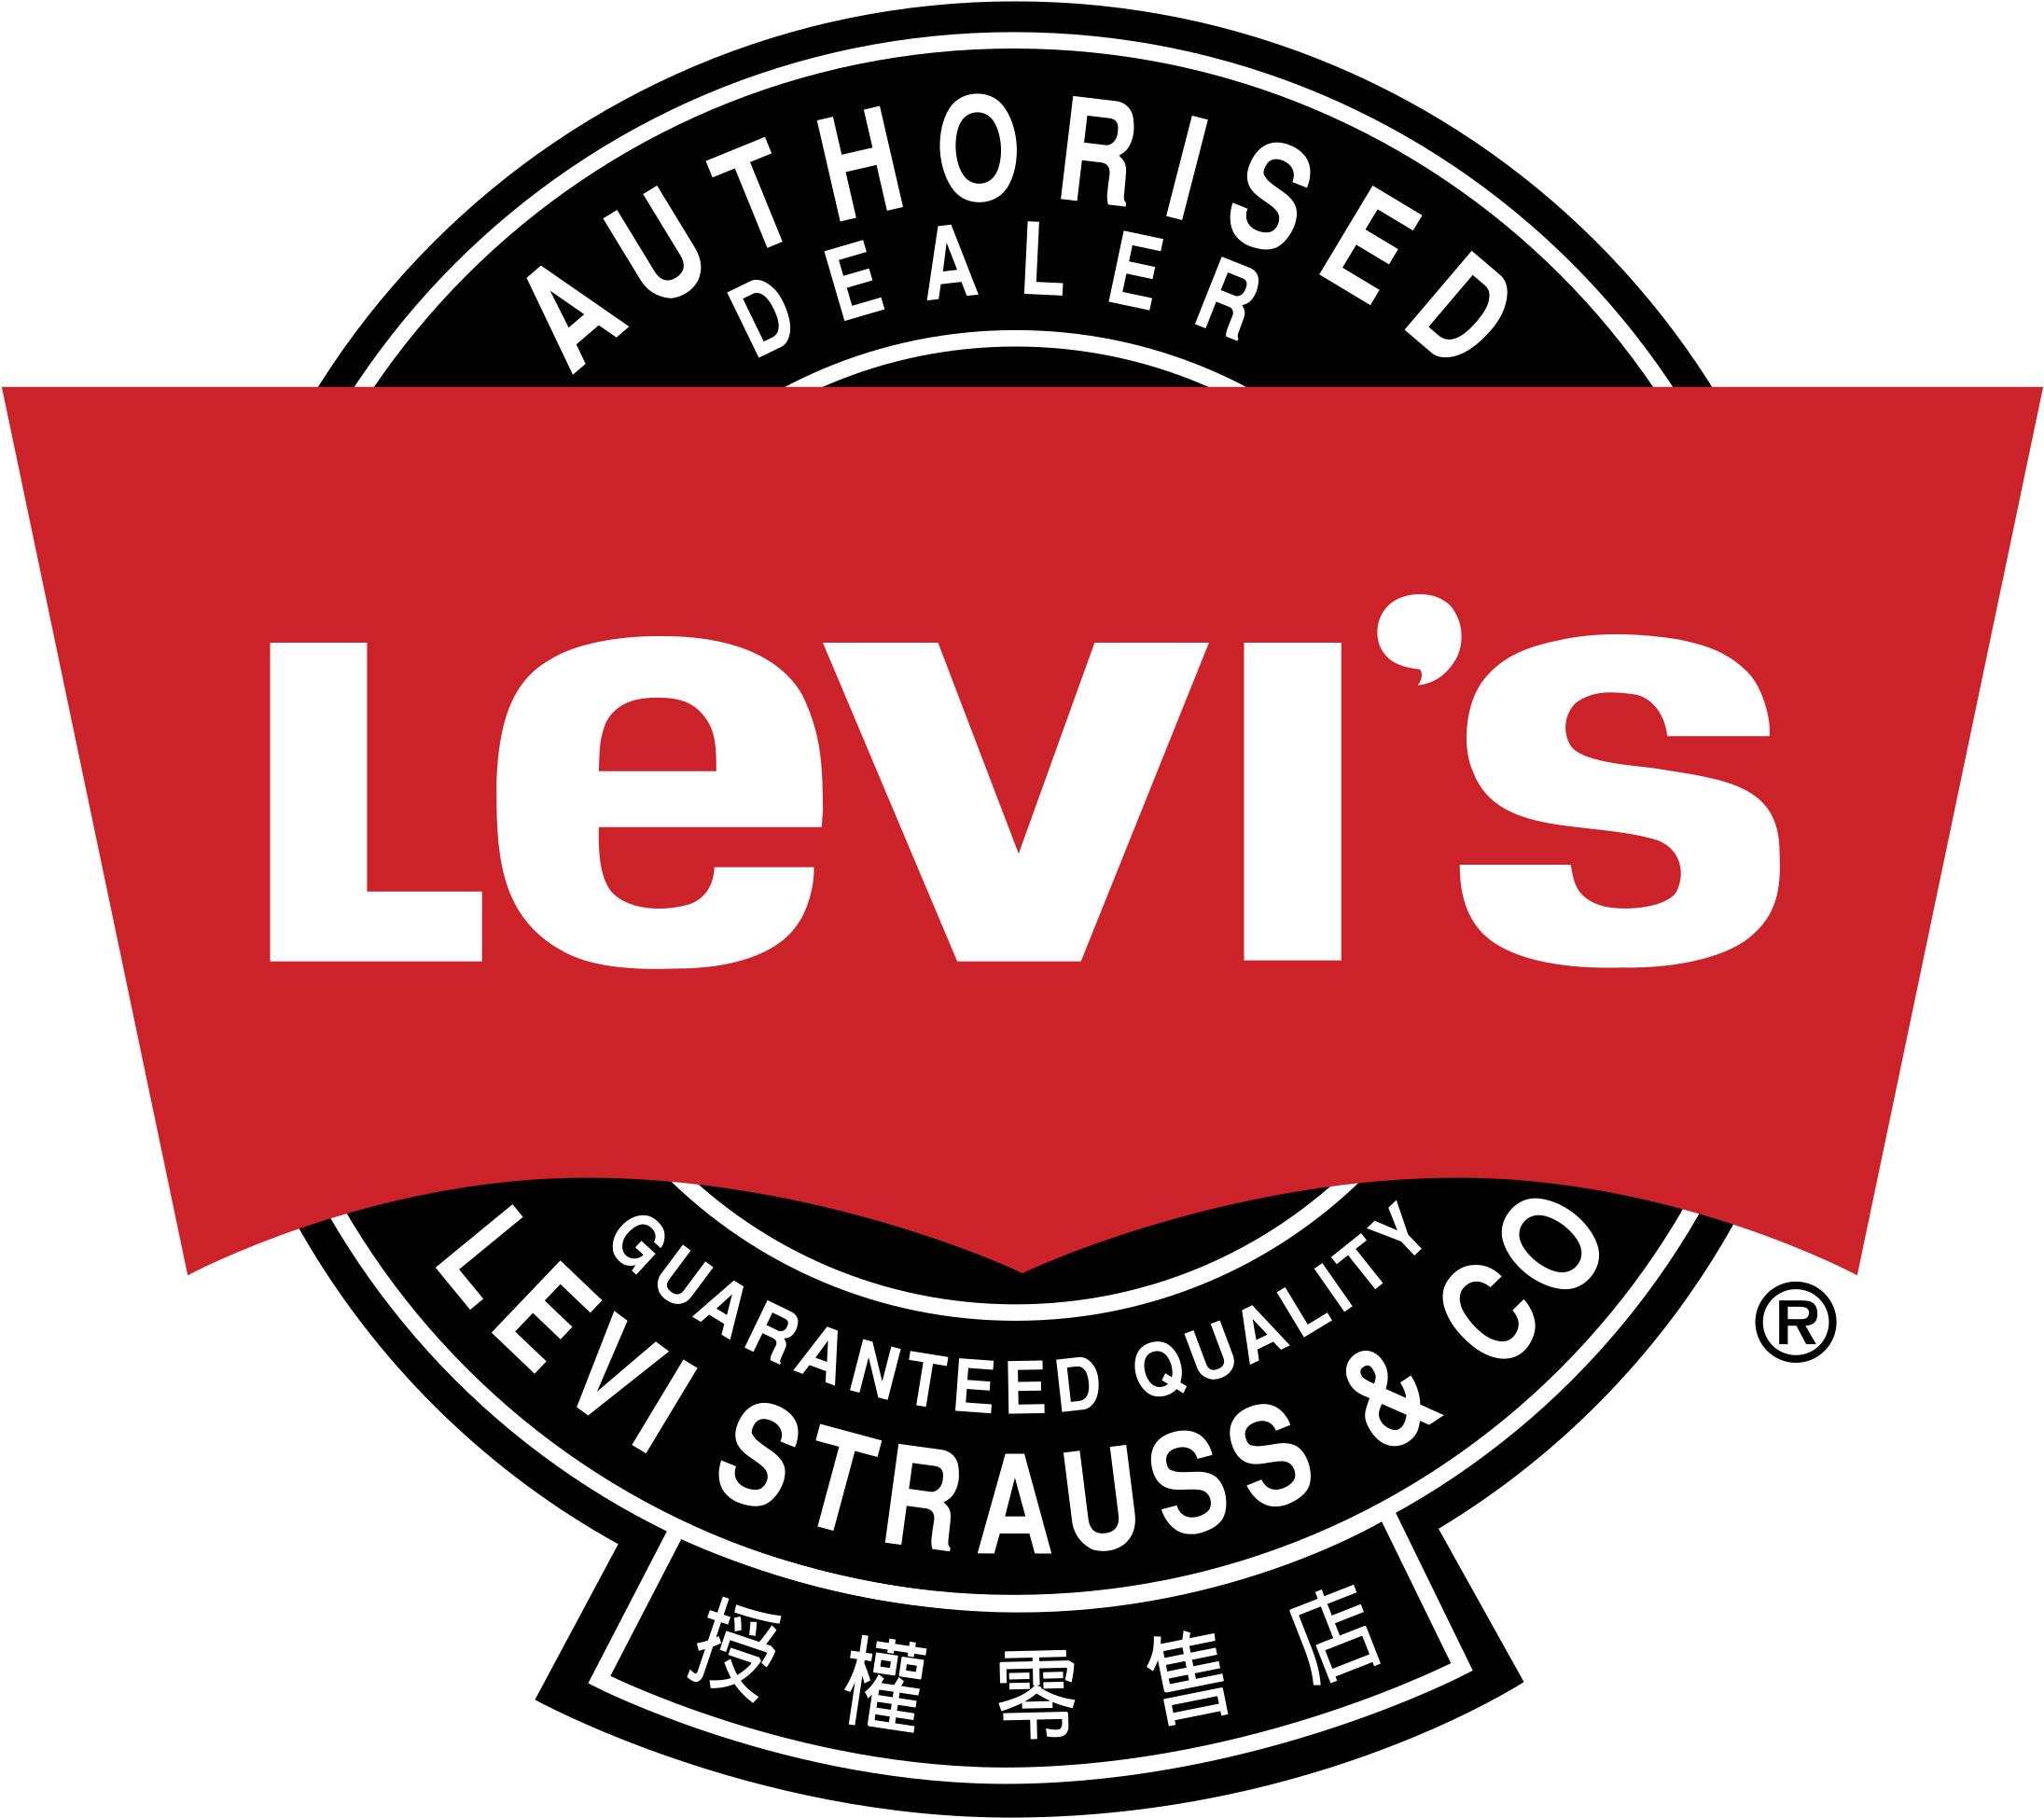 Levis 501 logo. Levi Strauss & co лого. Логотипы джинсовых брендов. Американские лейблы. Без лейблов